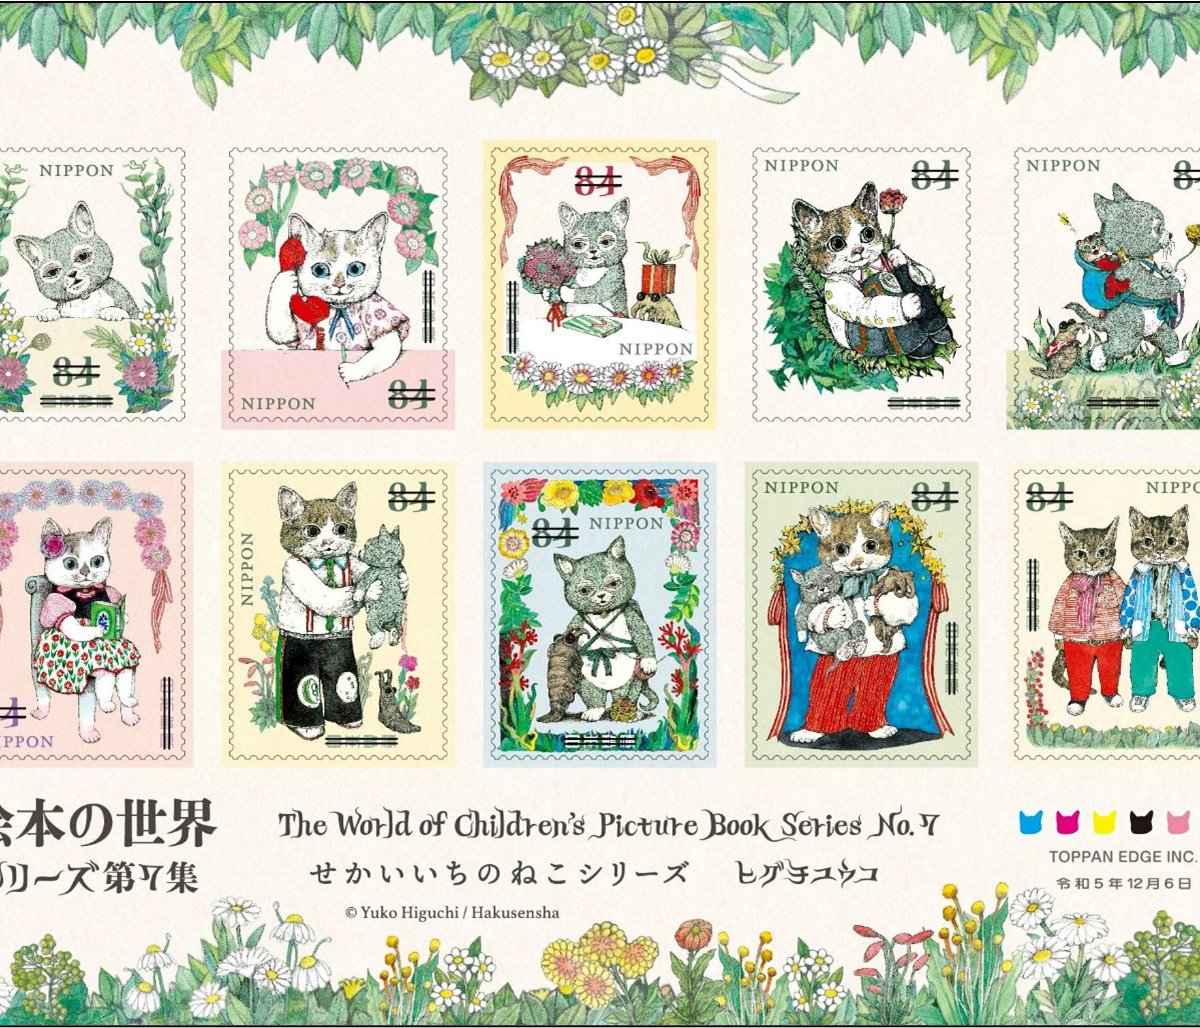 ヒグチユウコの絵本「せかいいちのねこ」シリーズの切手が登場、切手 